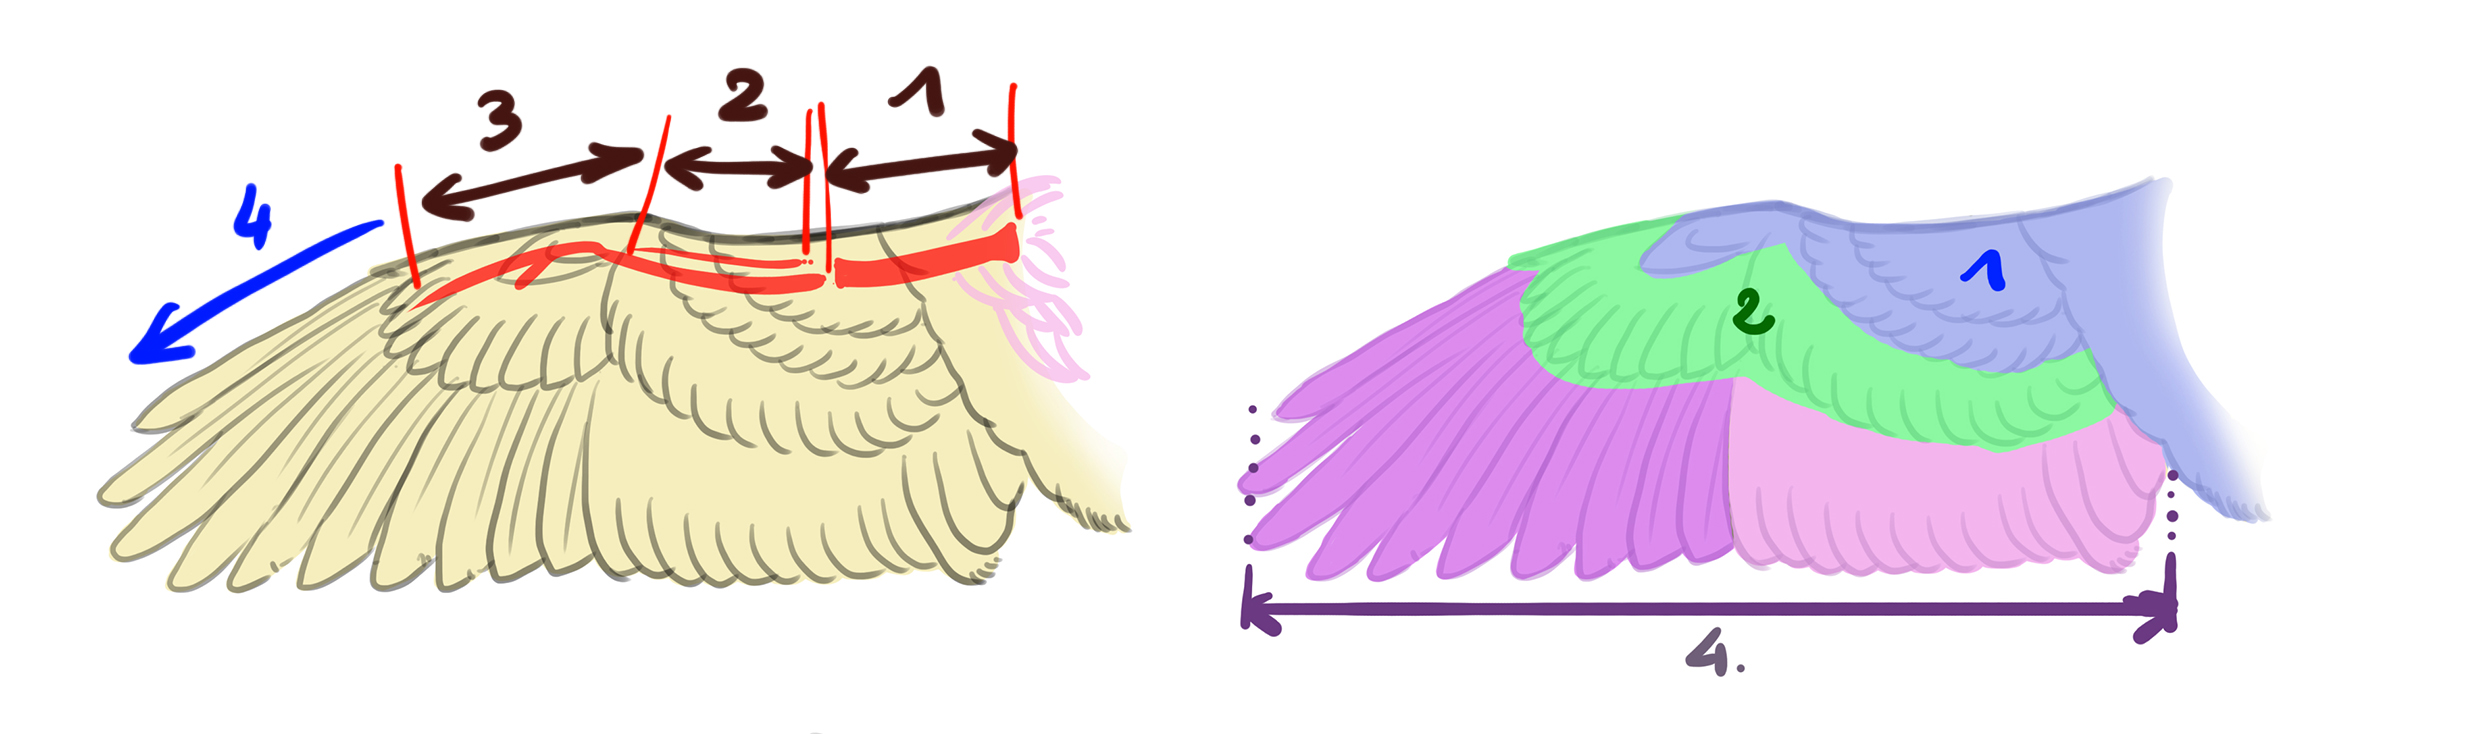 schéma de la structure des ailes